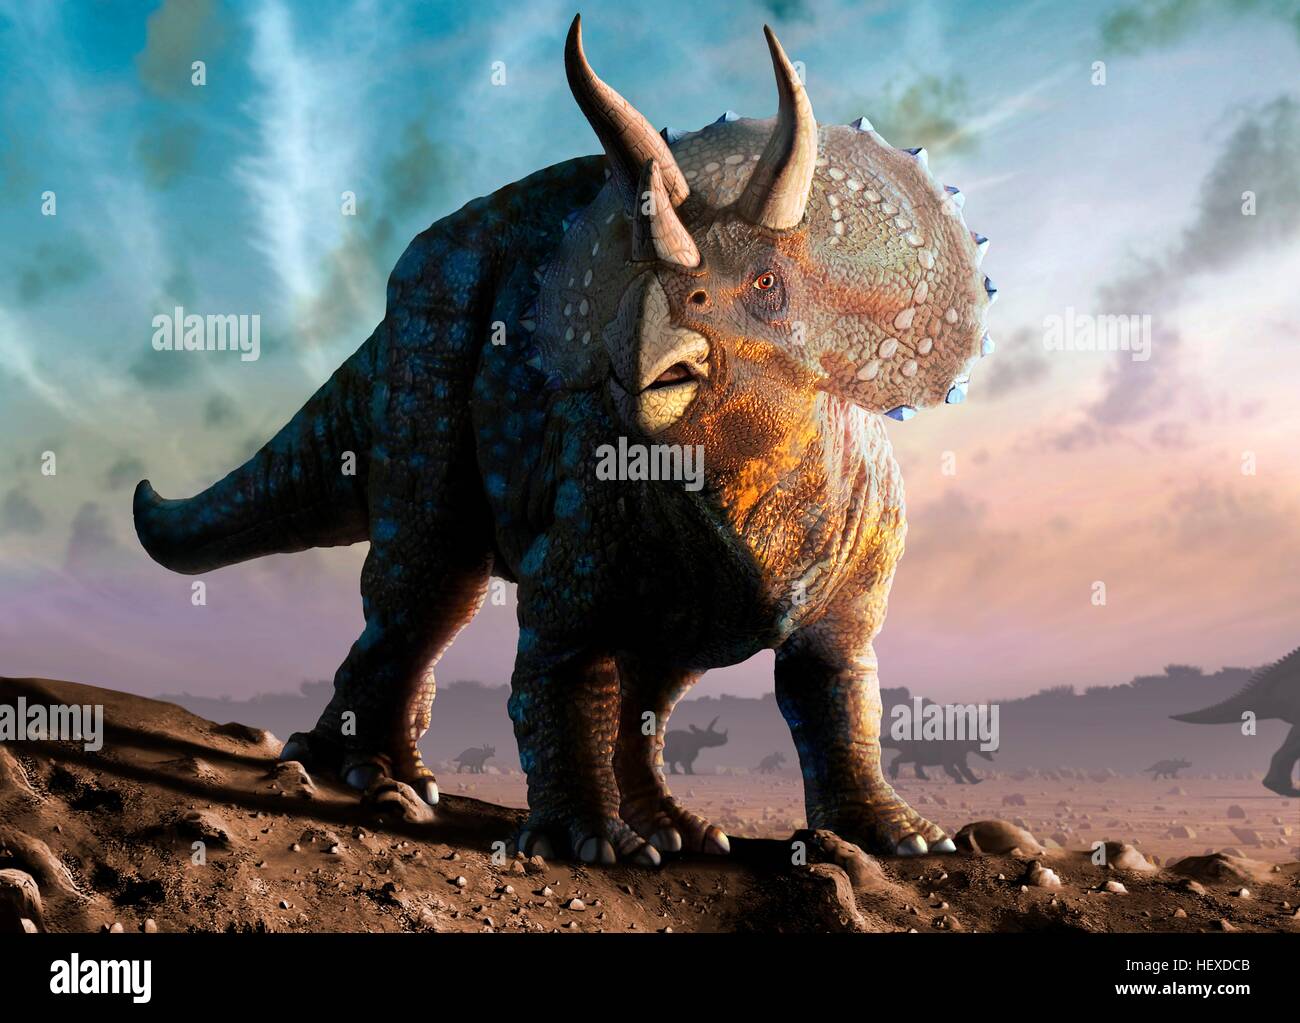 Illustrazione di un triceratops horridus dinosauro. Questi animali erano comuni nel tardo Cretaceo, da circa 70 milioni di anni fa fino a quando l'estinzione dei dinosauri circa 65 milioni di anni fa. Triceratops era un dinosauro erbivoro che può raggiungere una lunghezza di fino a nove metri. Essa ha utilizzato le sue corna e il suo collo scudo per difendersi contro gli attacchi. Come i moderni plains animali, essi possono avere vissuto in mandrie, in quello che oggi è il Nord America. Foto Stock